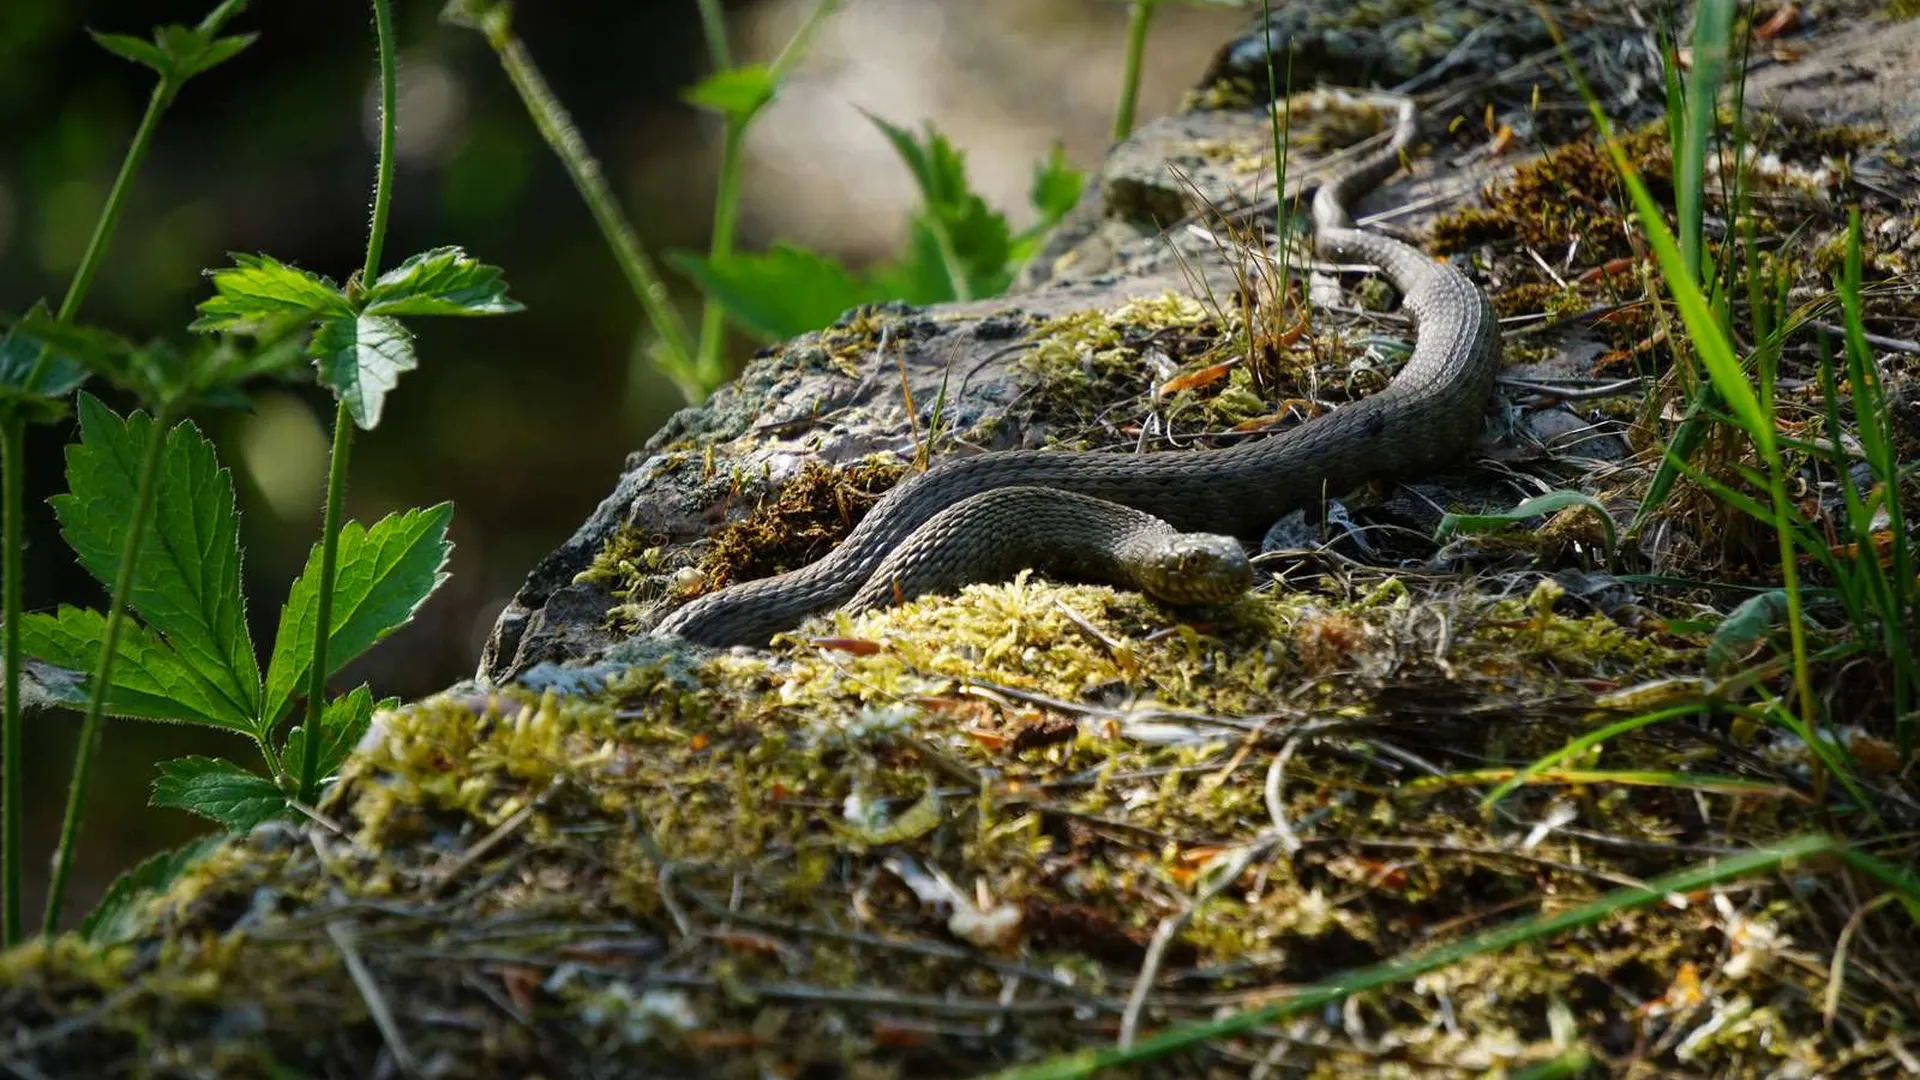 Змеи активизировались в лесах Подмосковья из-за жары | 360°